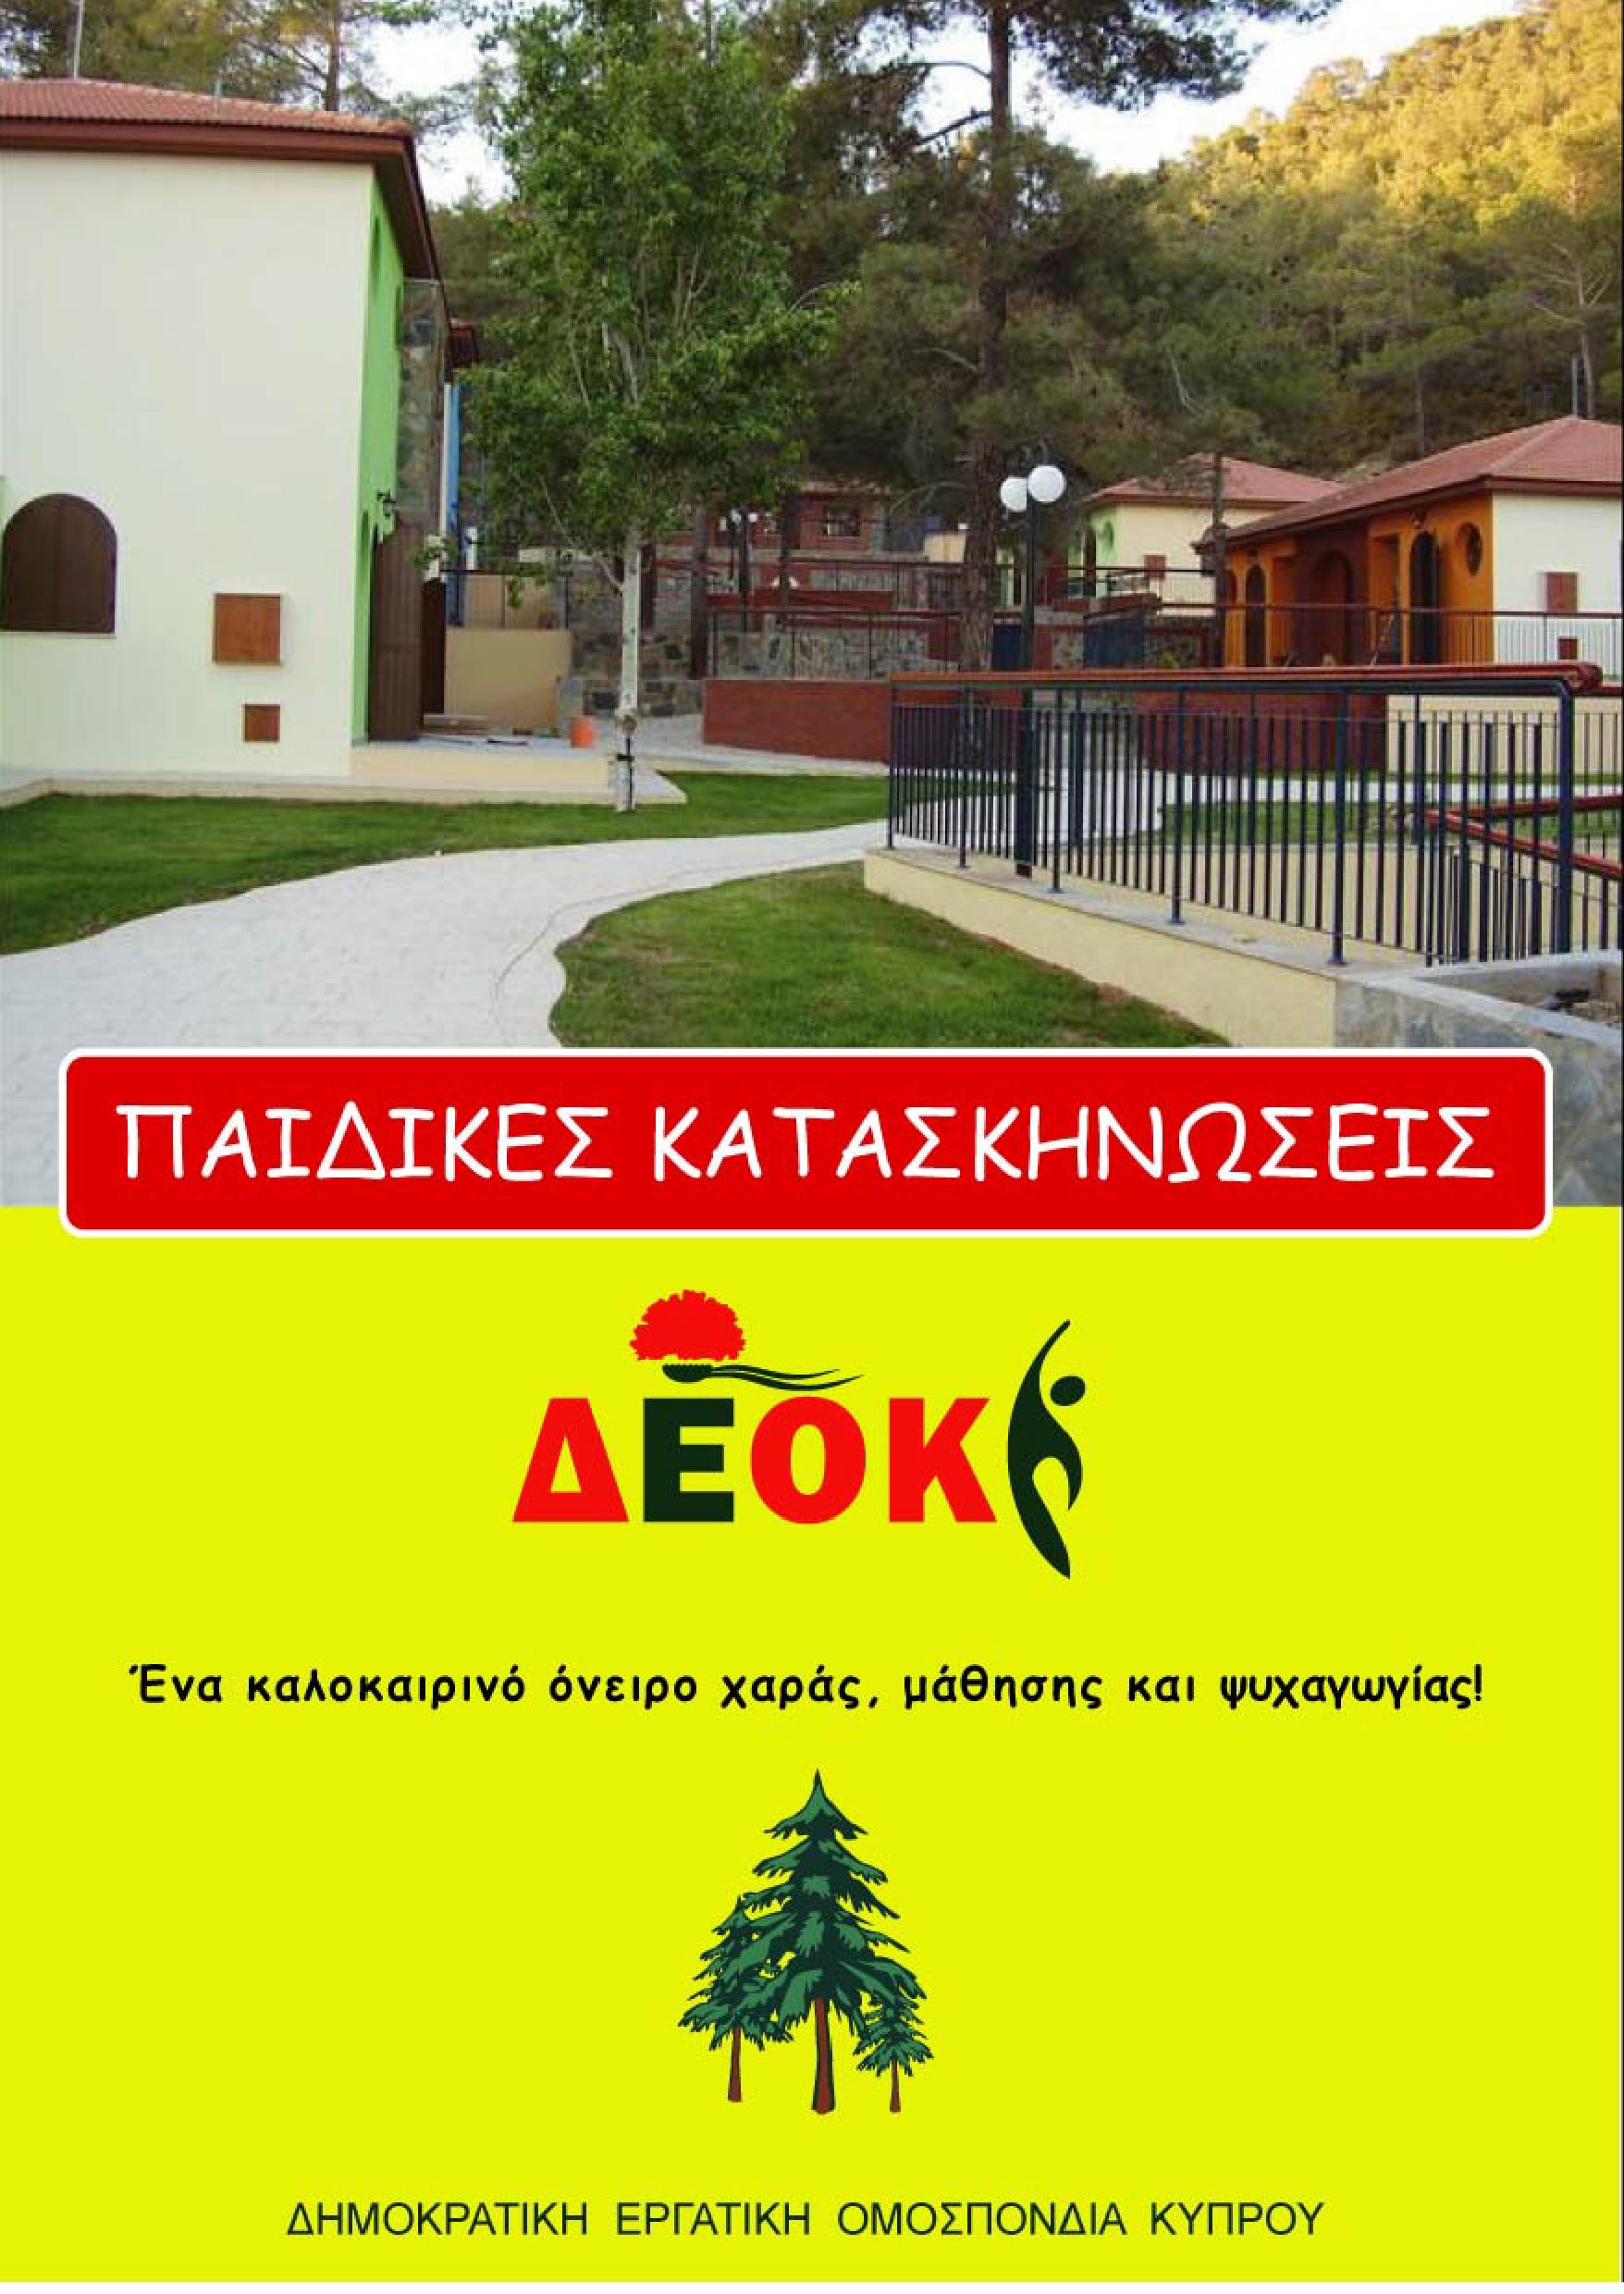 DEOK KATASKINOSI leaflet 01